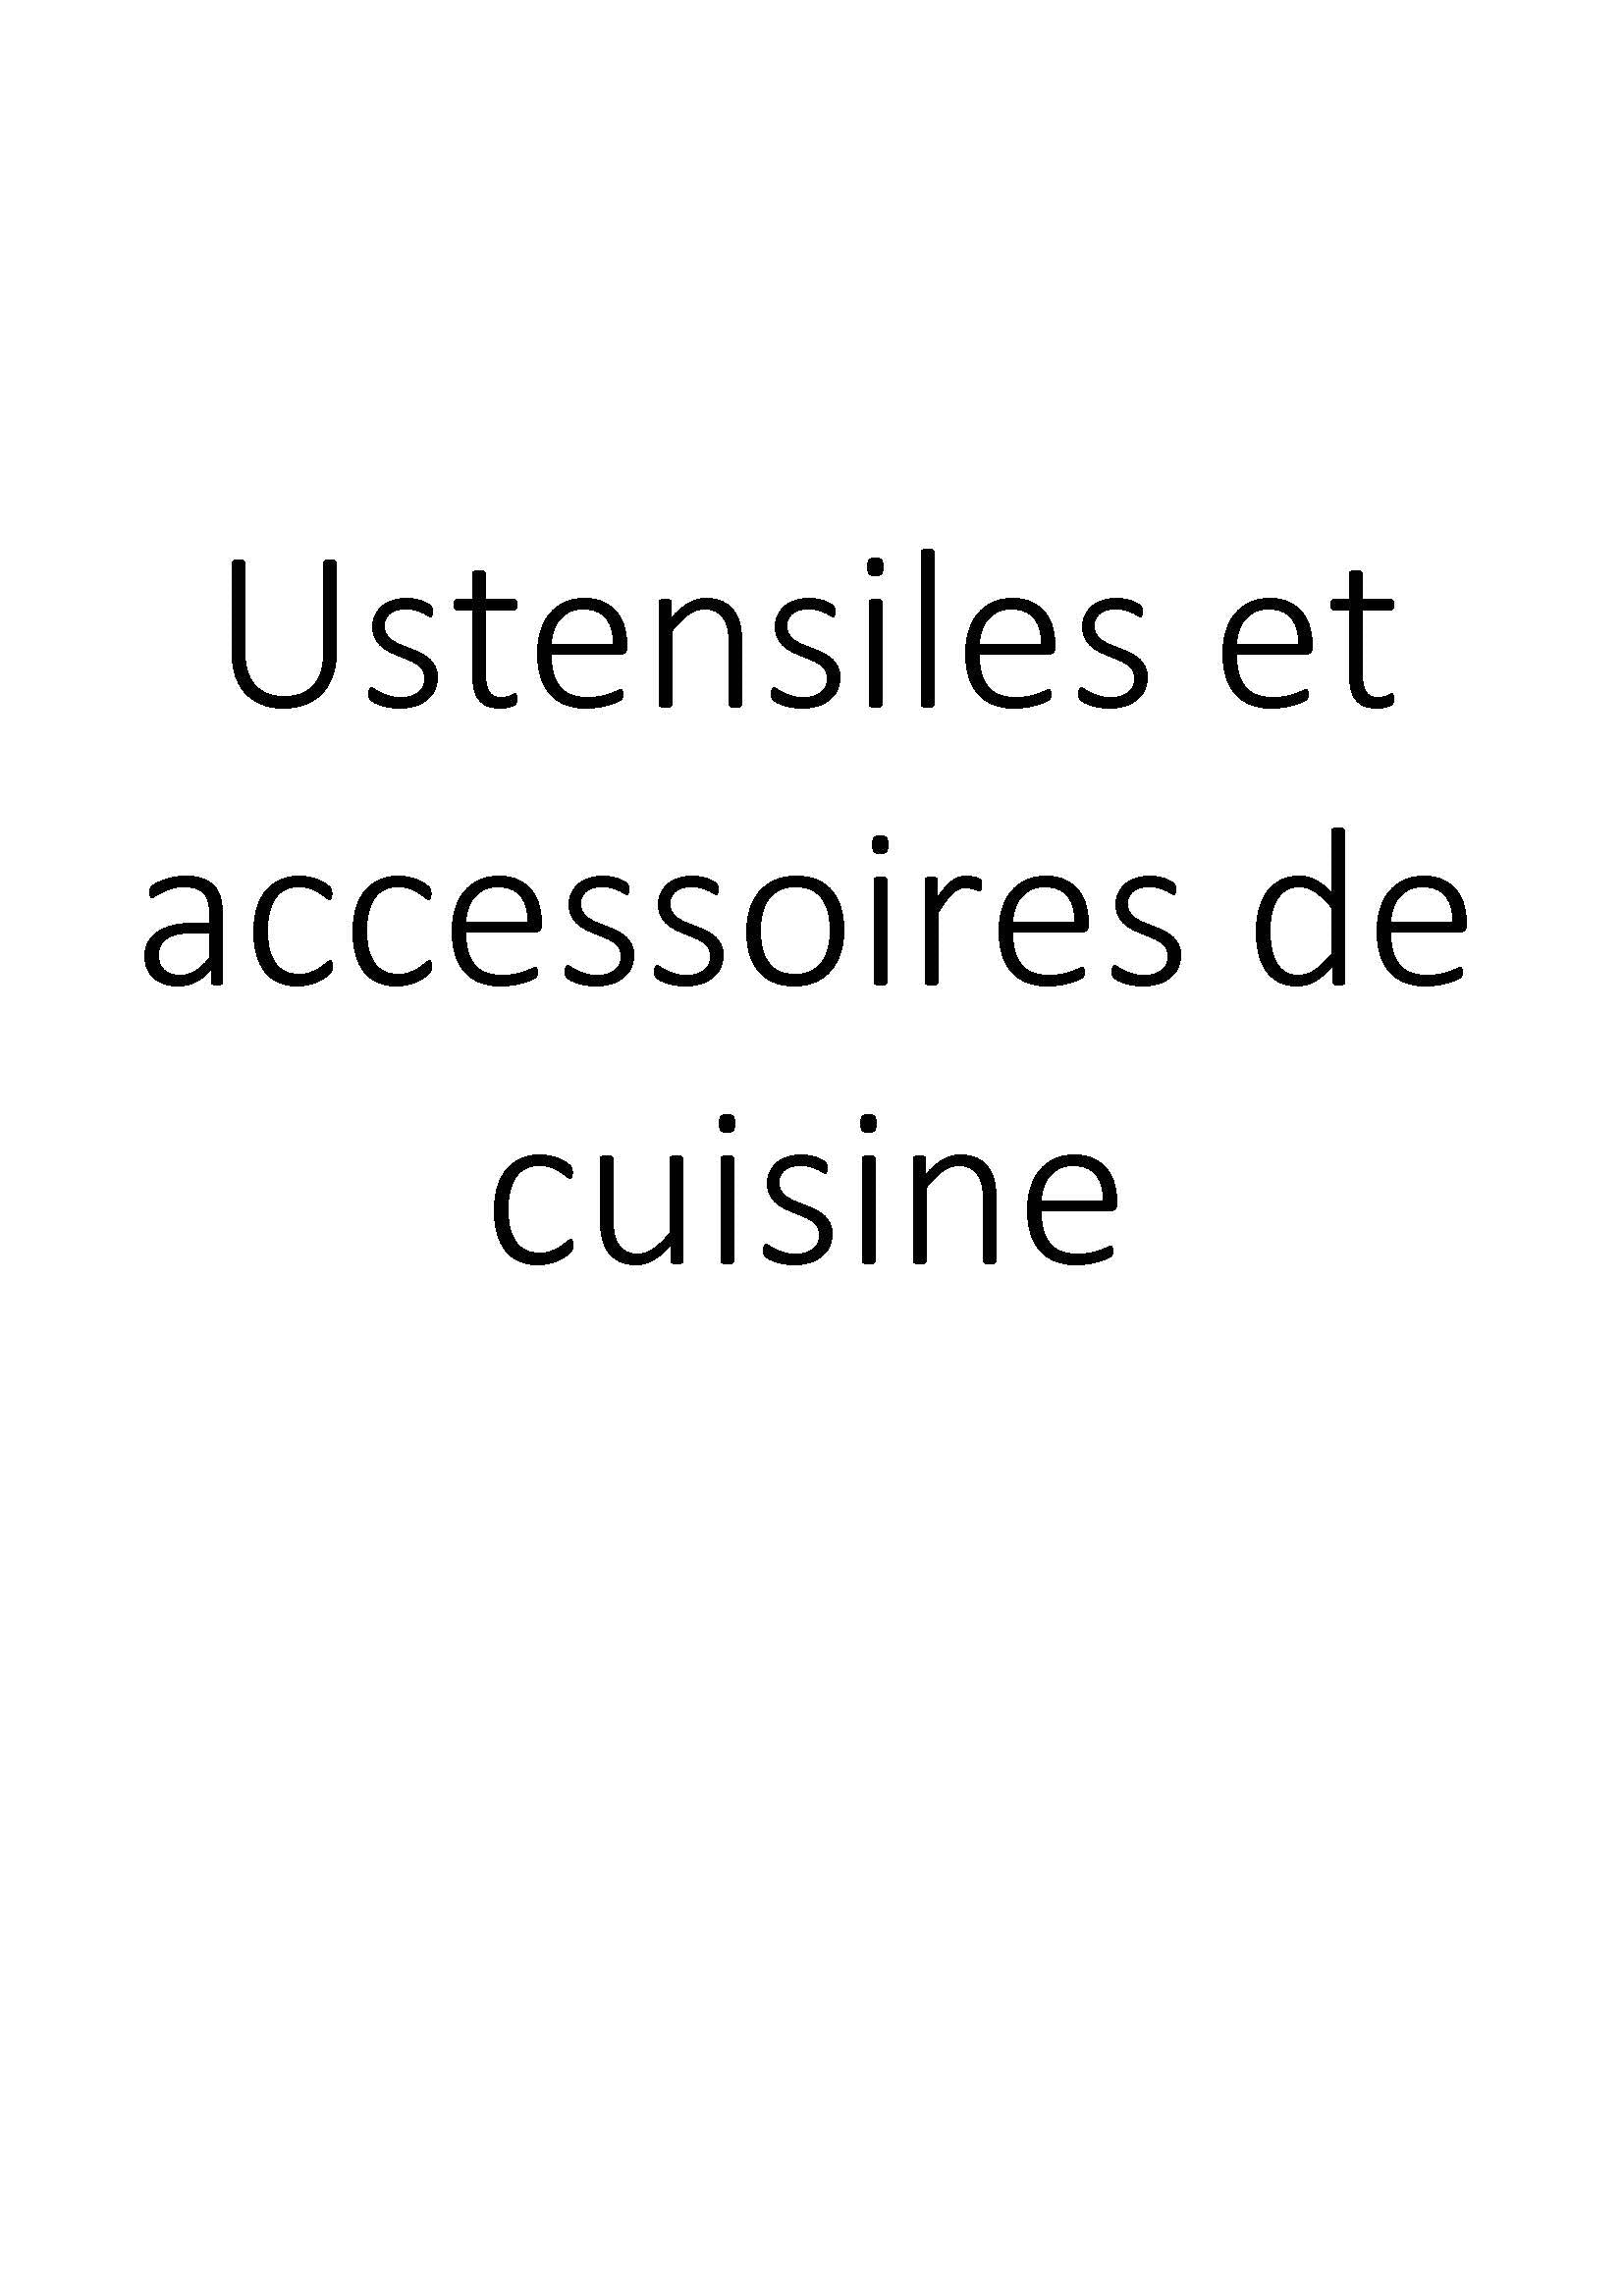 Ustensiles et accessoires de cuisine clicktofournisseur.com